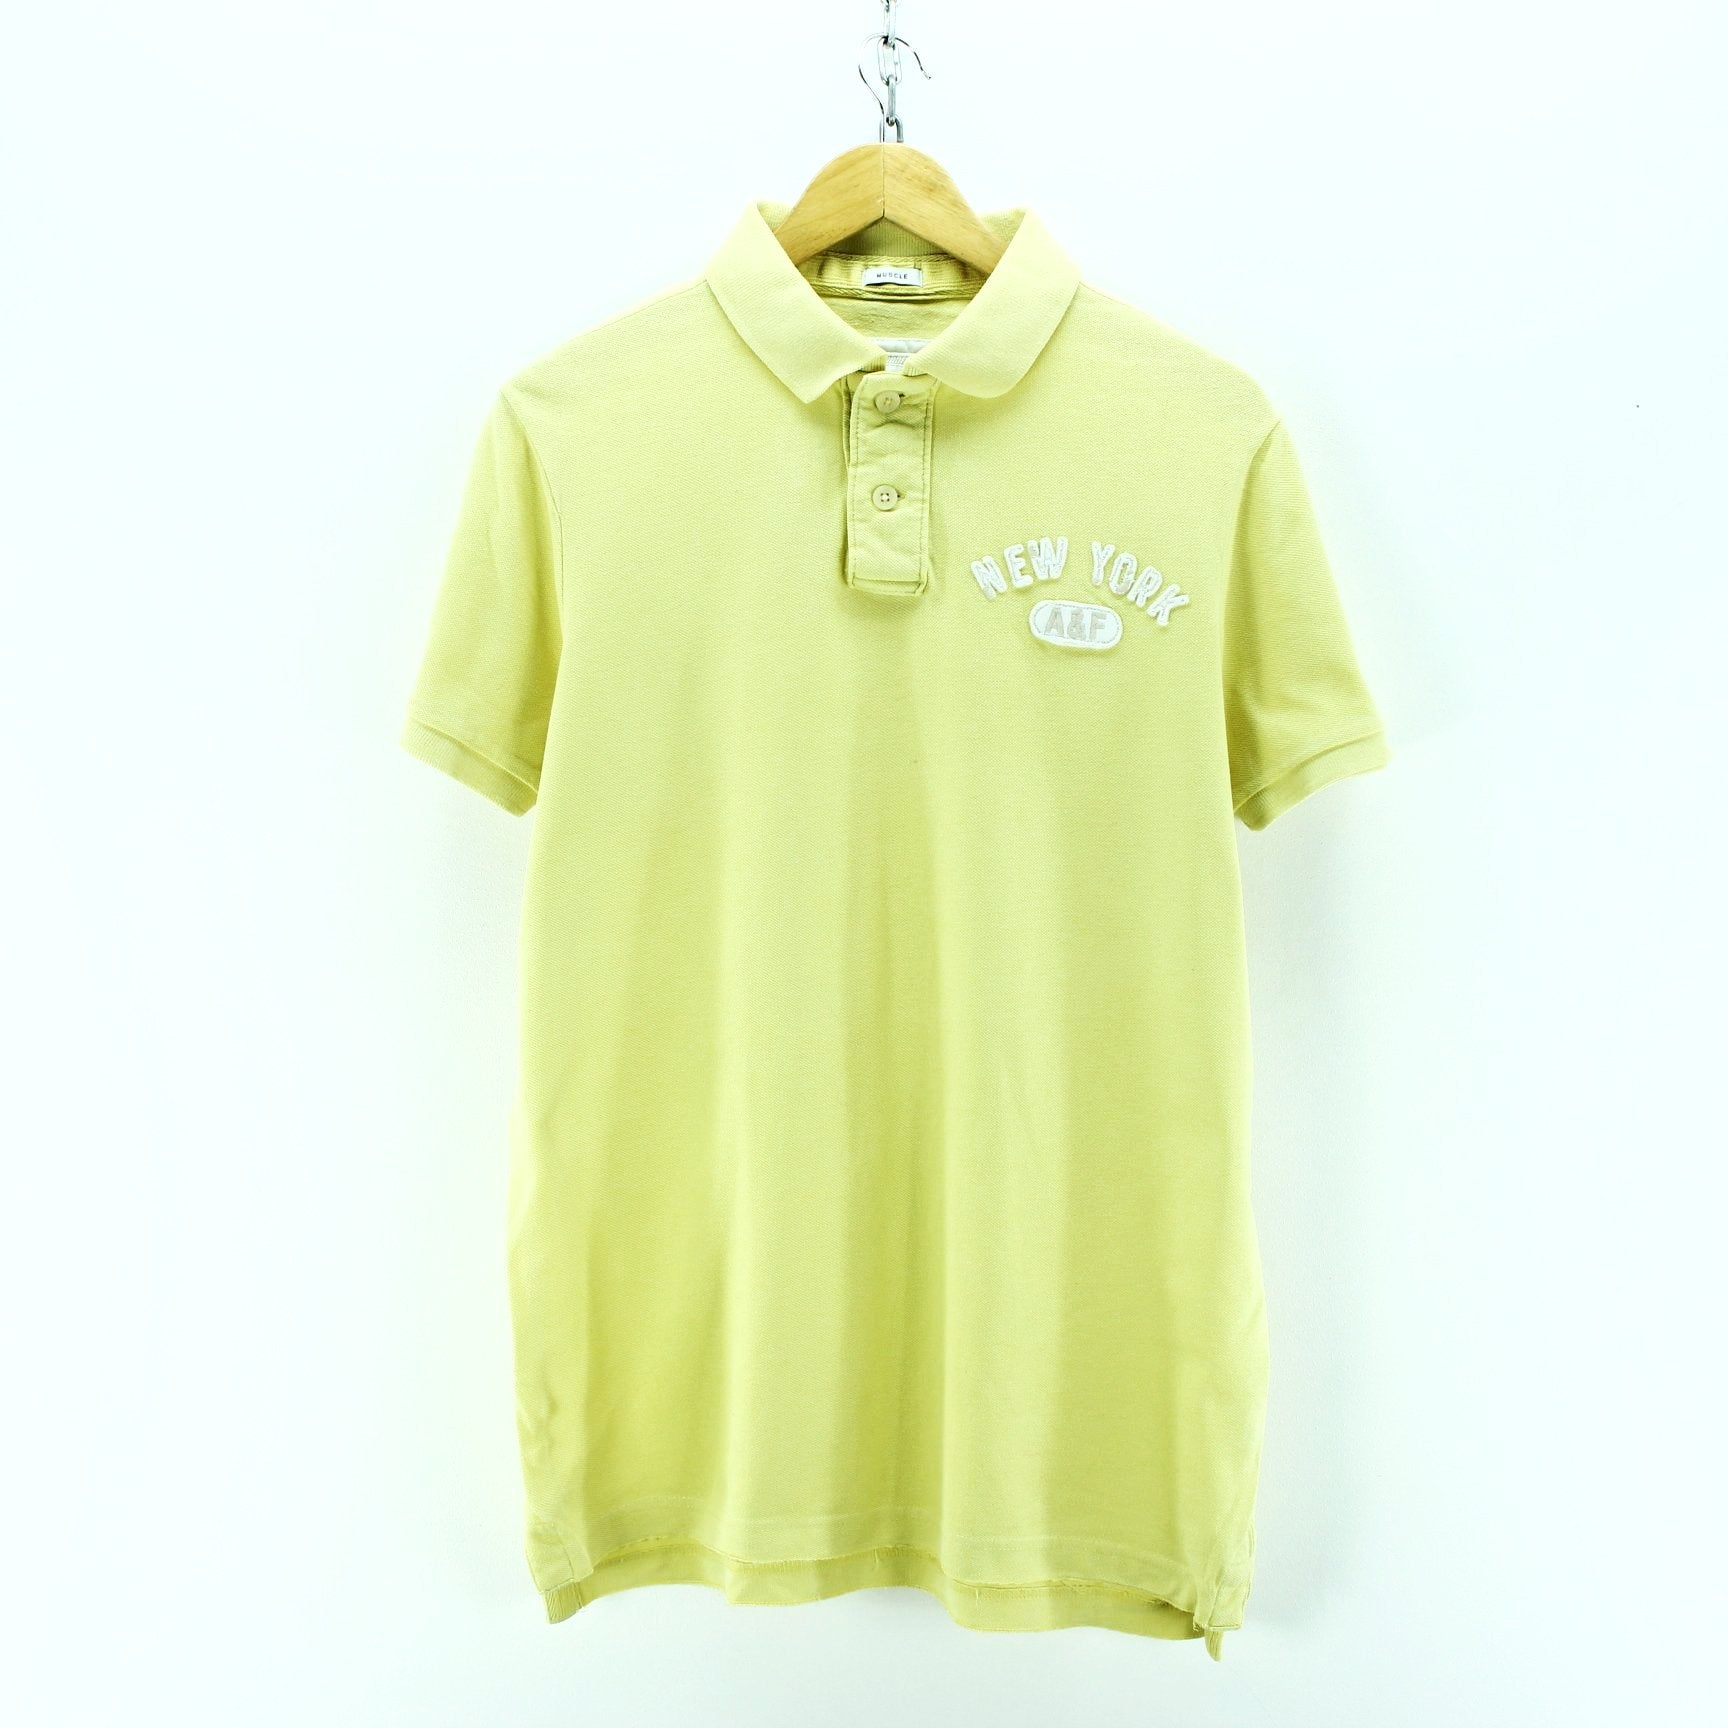 abercrombie yellow shirt